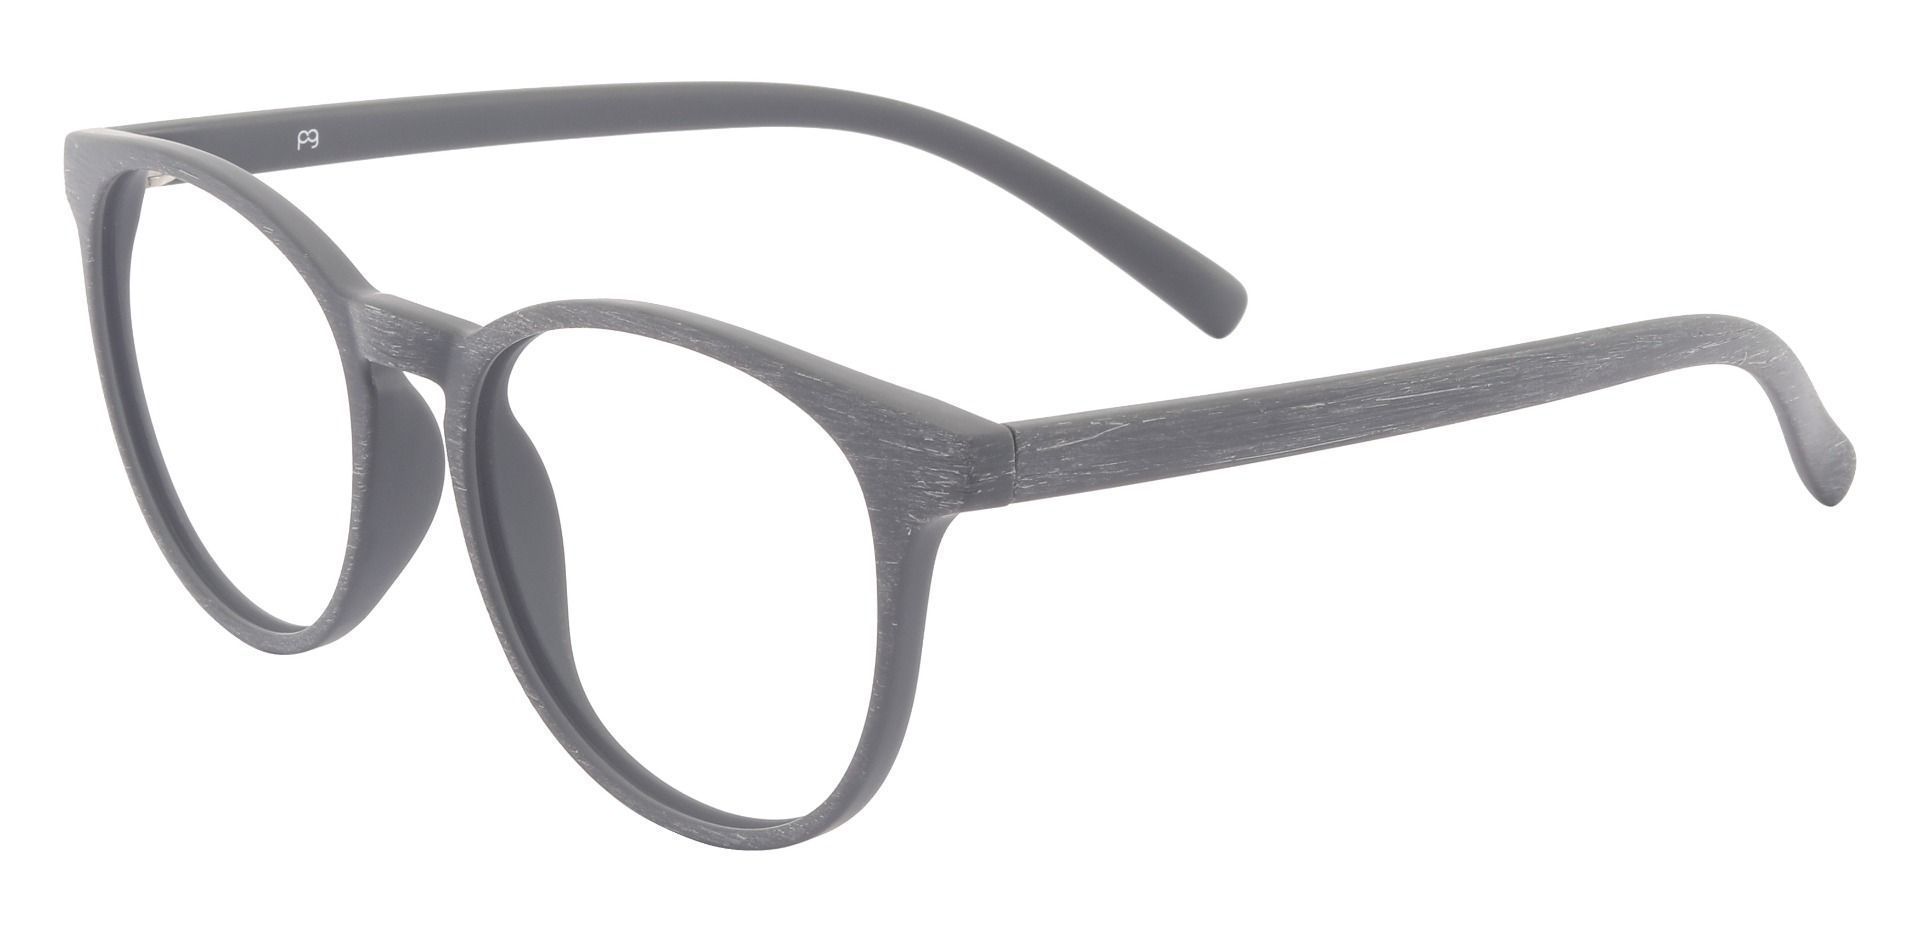 Corbett Oval Prescription Glasses - Gray